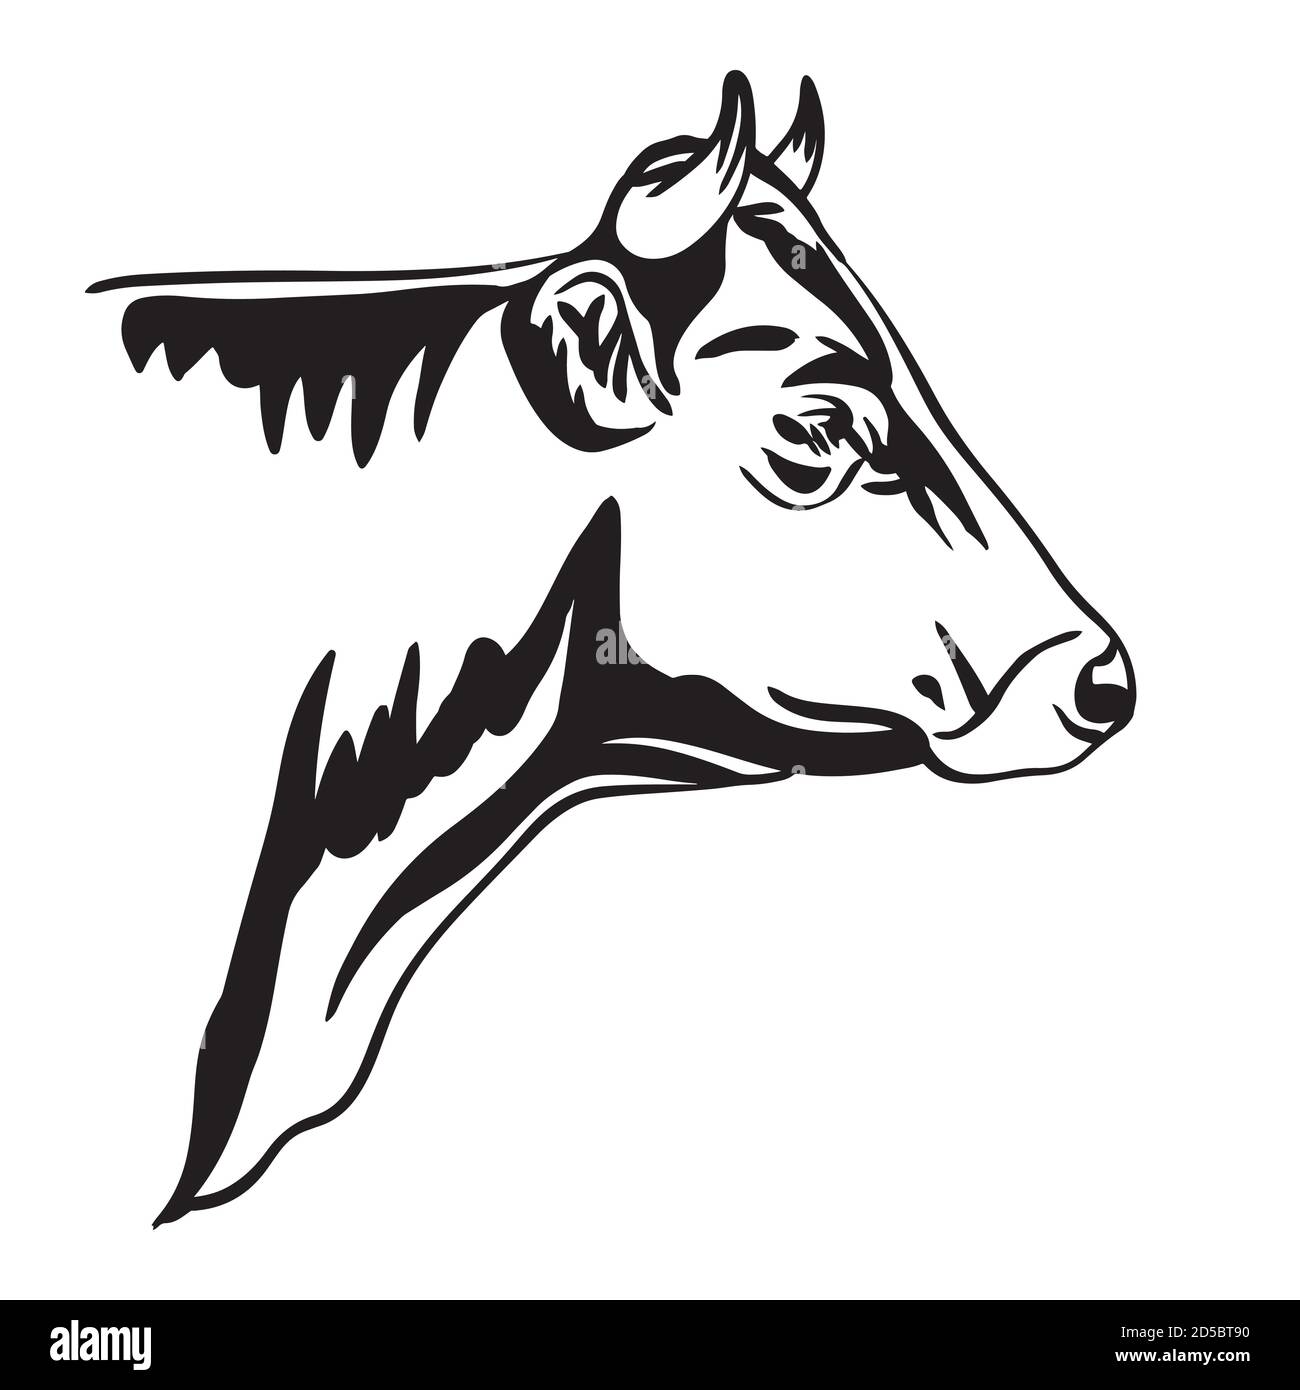 Portrait abstrait de l'illustration du vecteur taureau en noir isolé sur fond blanc. Image de modèle de gravure pour l'étiquette, le logo, le design, l'emballage Illustration de Vecteur